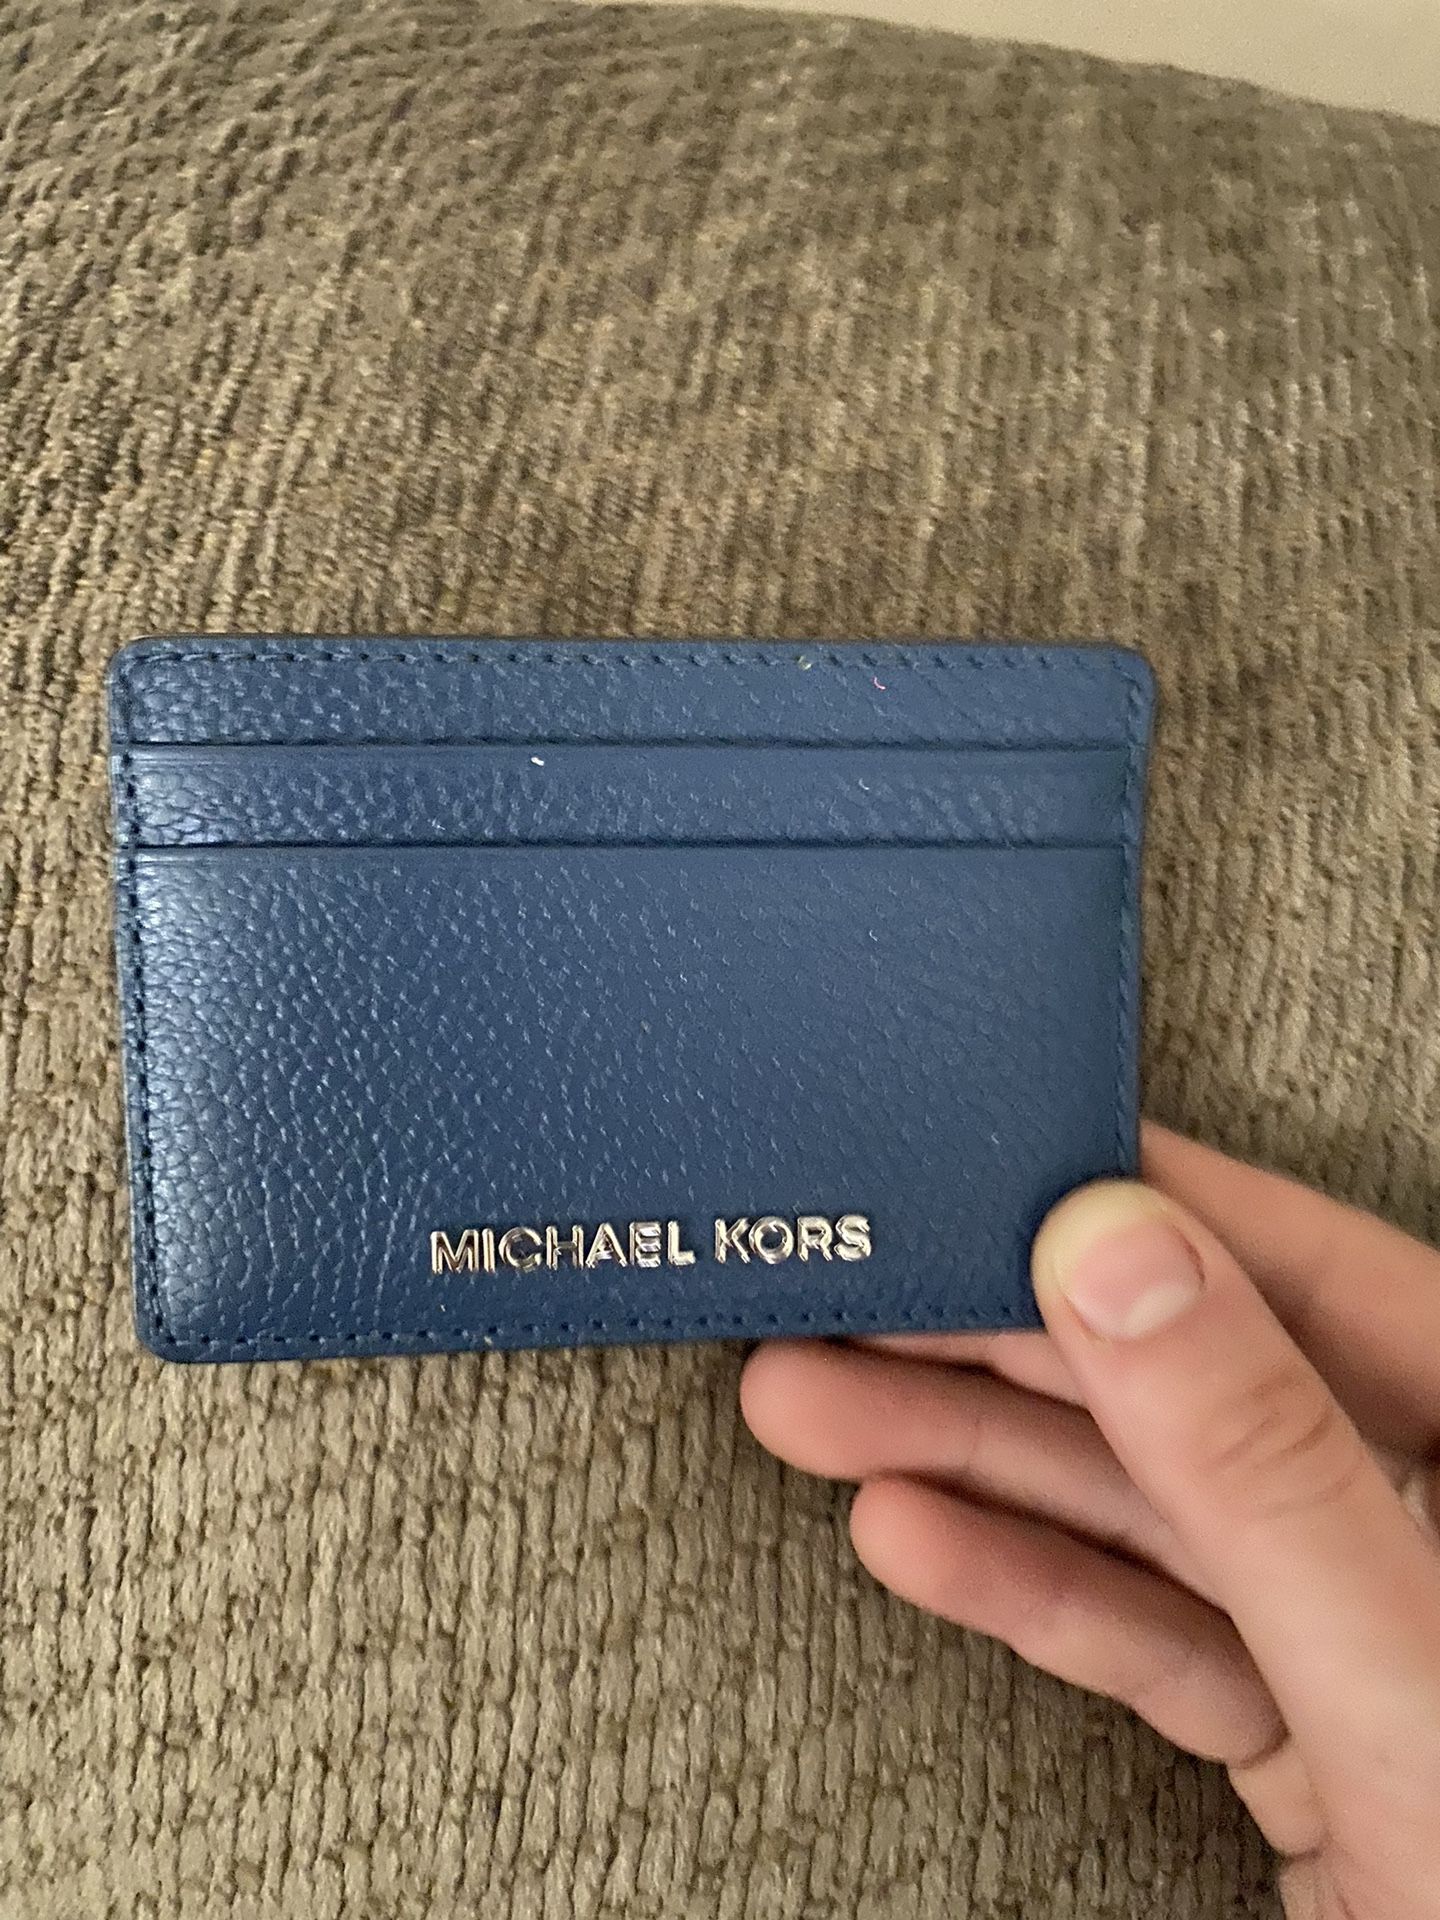 Michael Kors Card Holder 